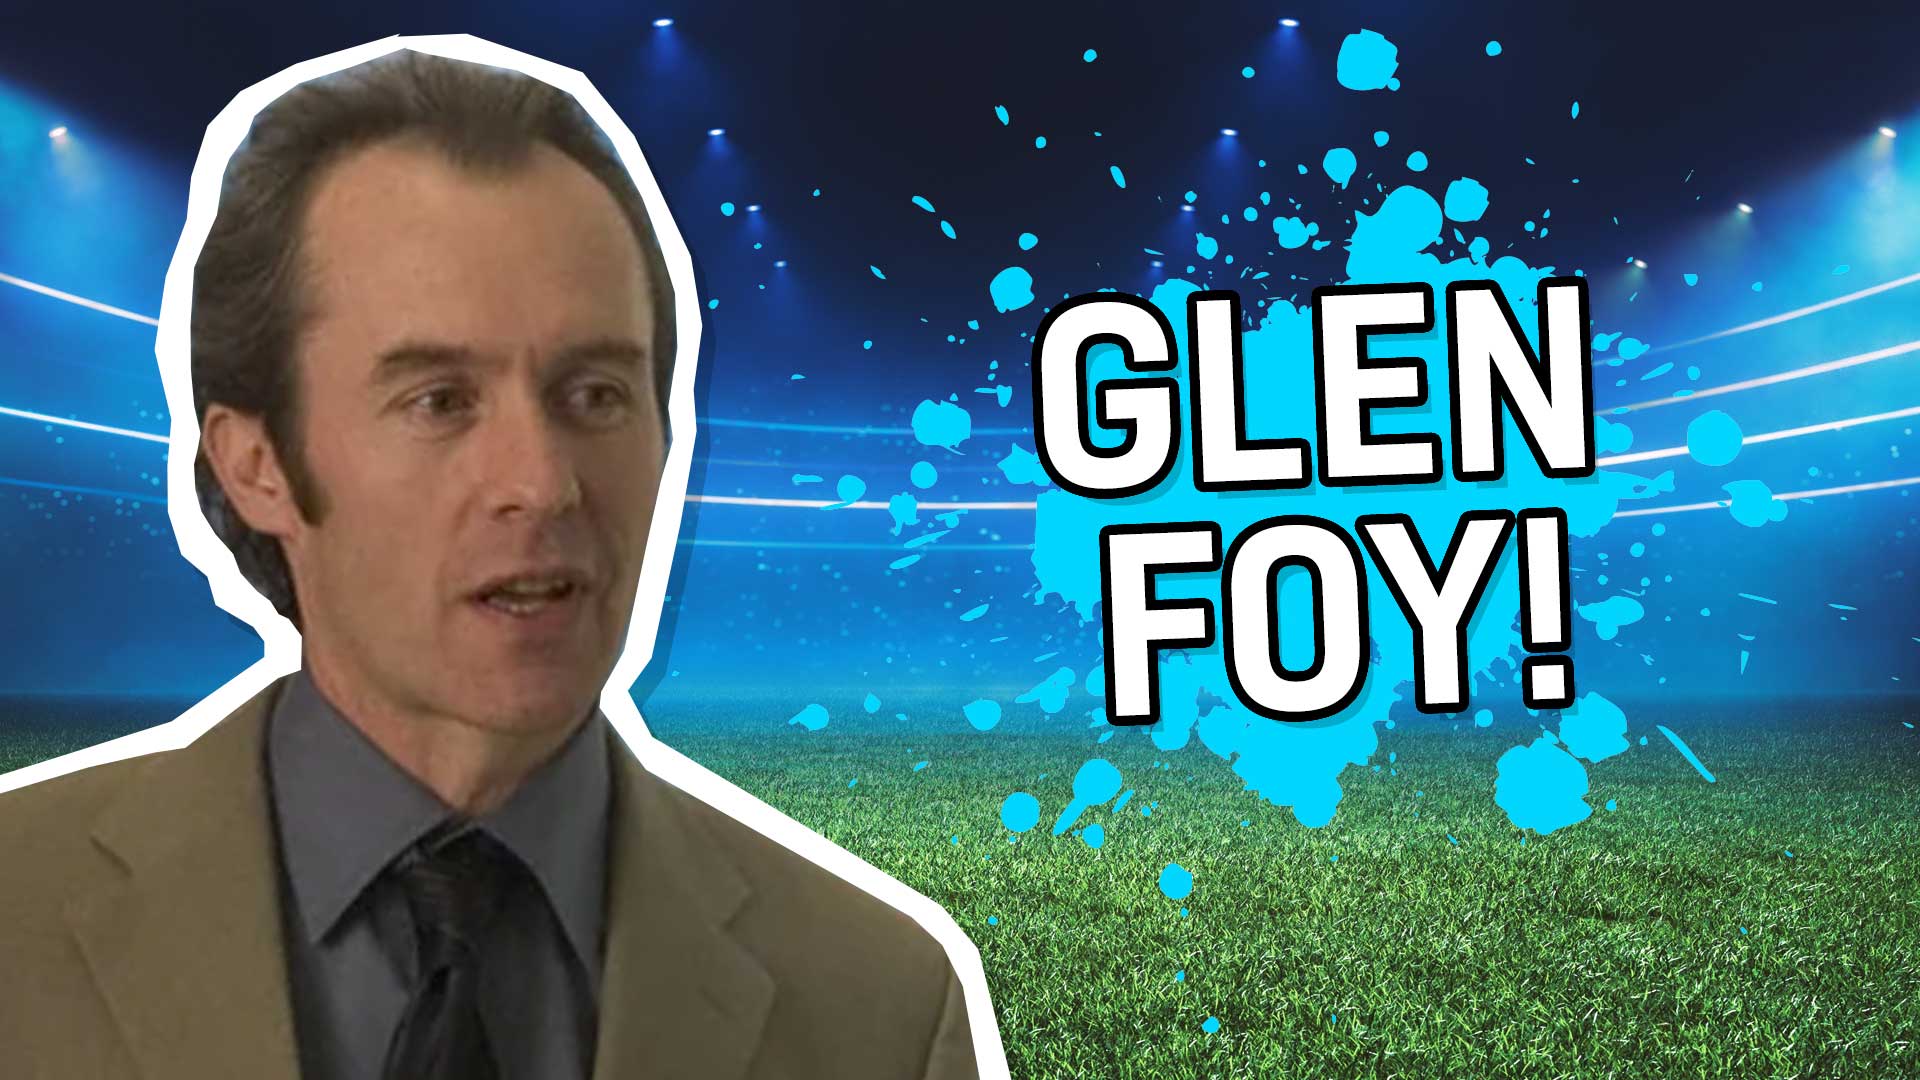 Glen Foy